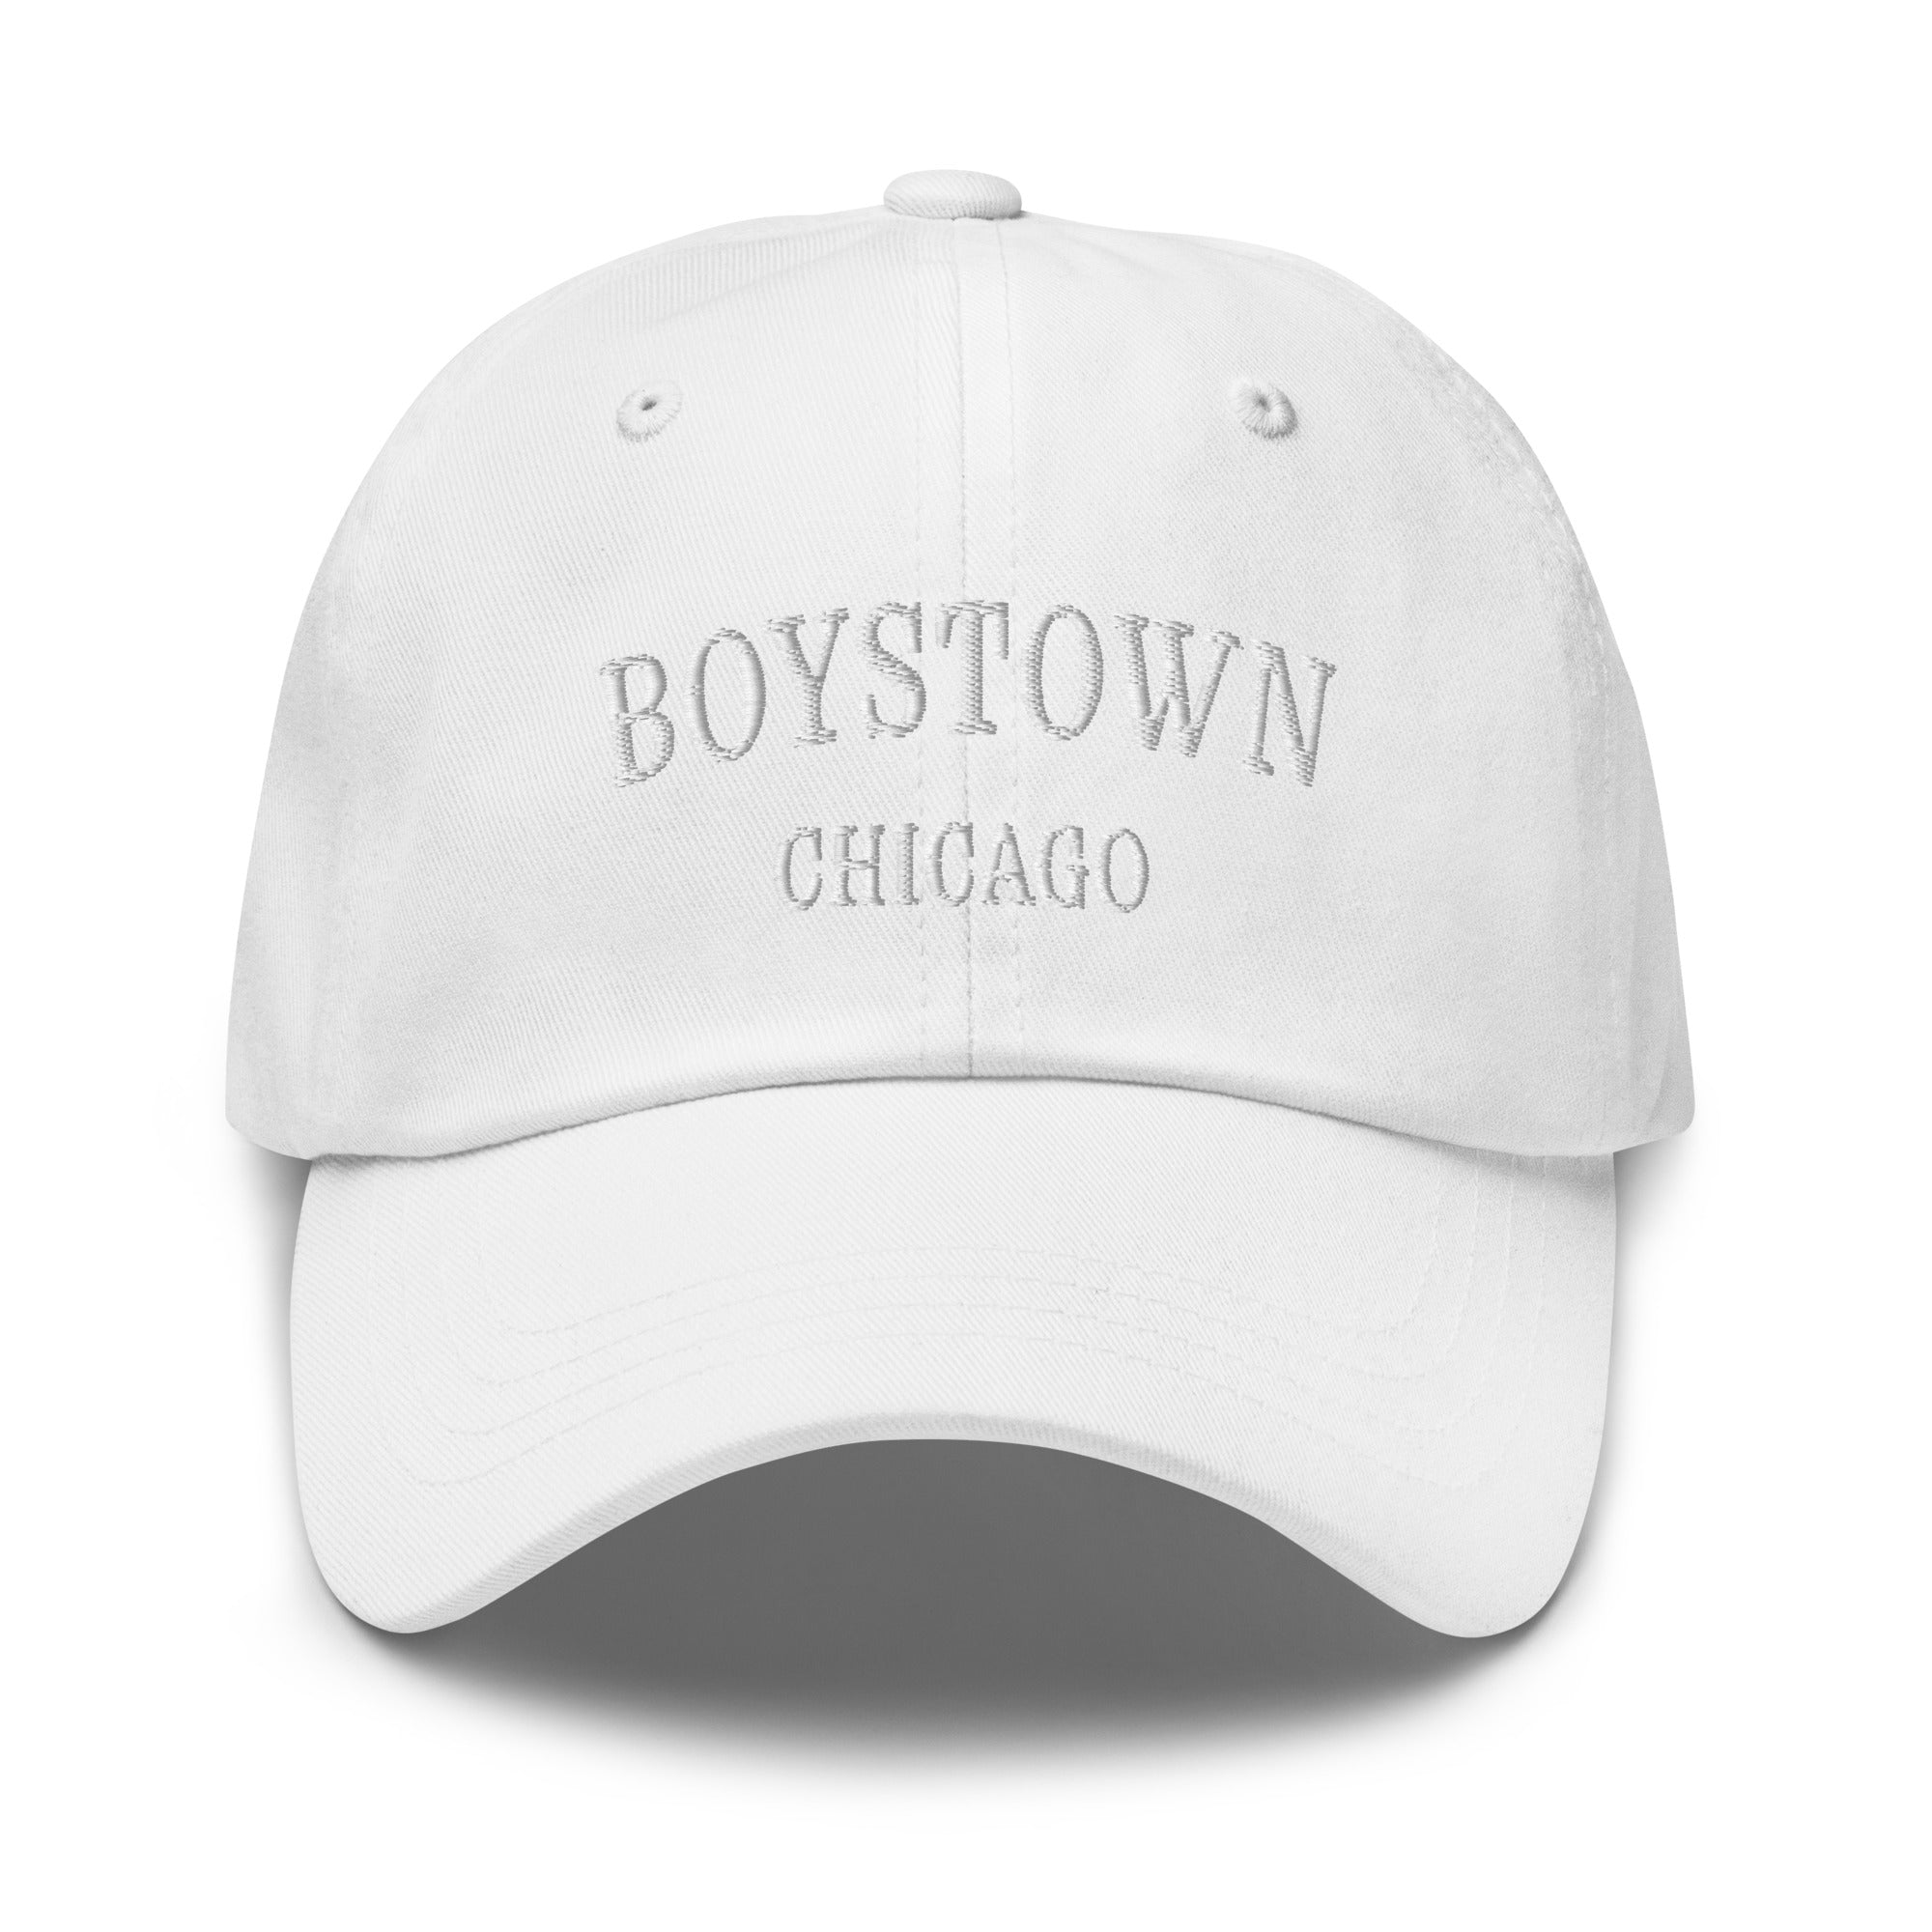 Boystown Chicago Dad Hat